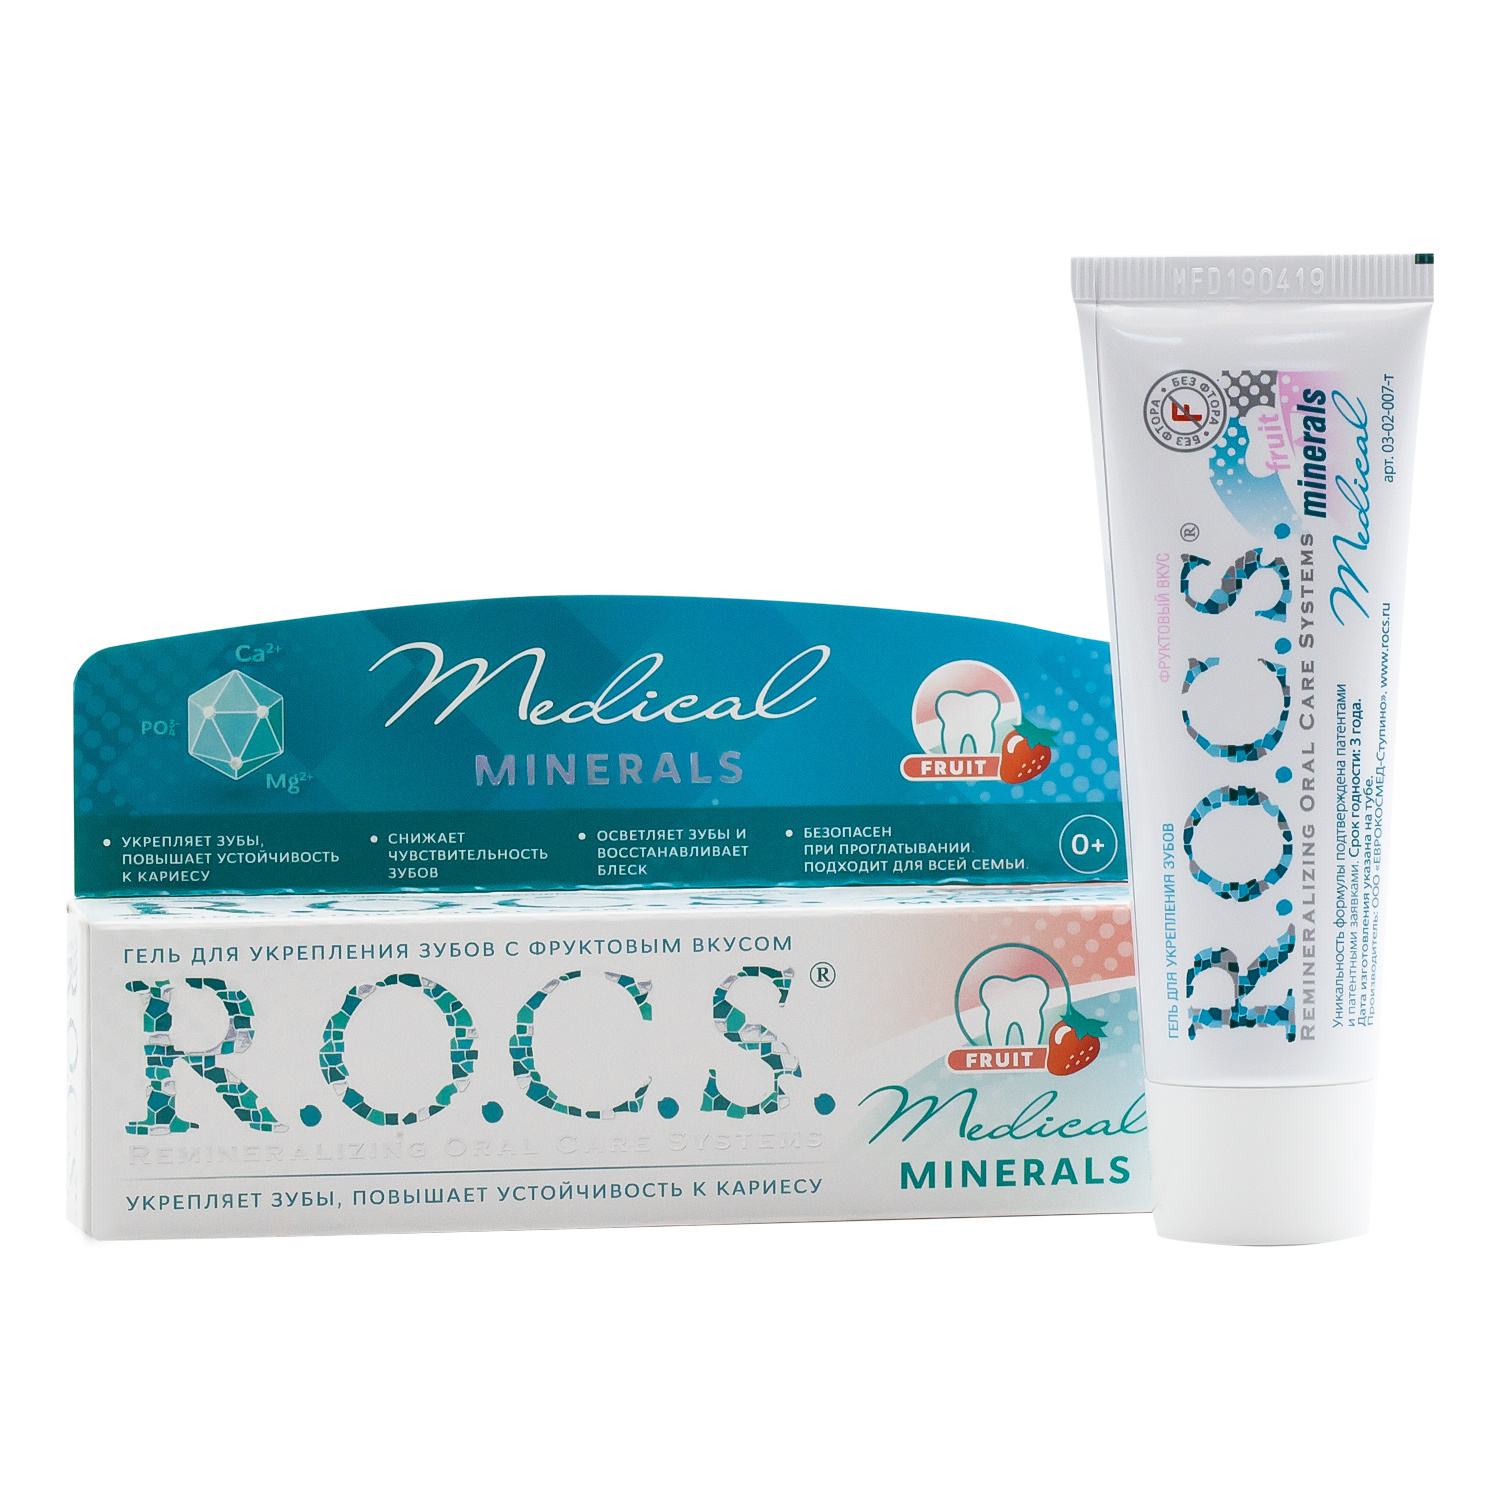 Рокс минералс гель купить. Зубная паста Rocs Medical Minerals. Рокс минерал Медикал гель. Рокс гель минералс гель. Rocs Medical Minerals гель реминерализирующий.